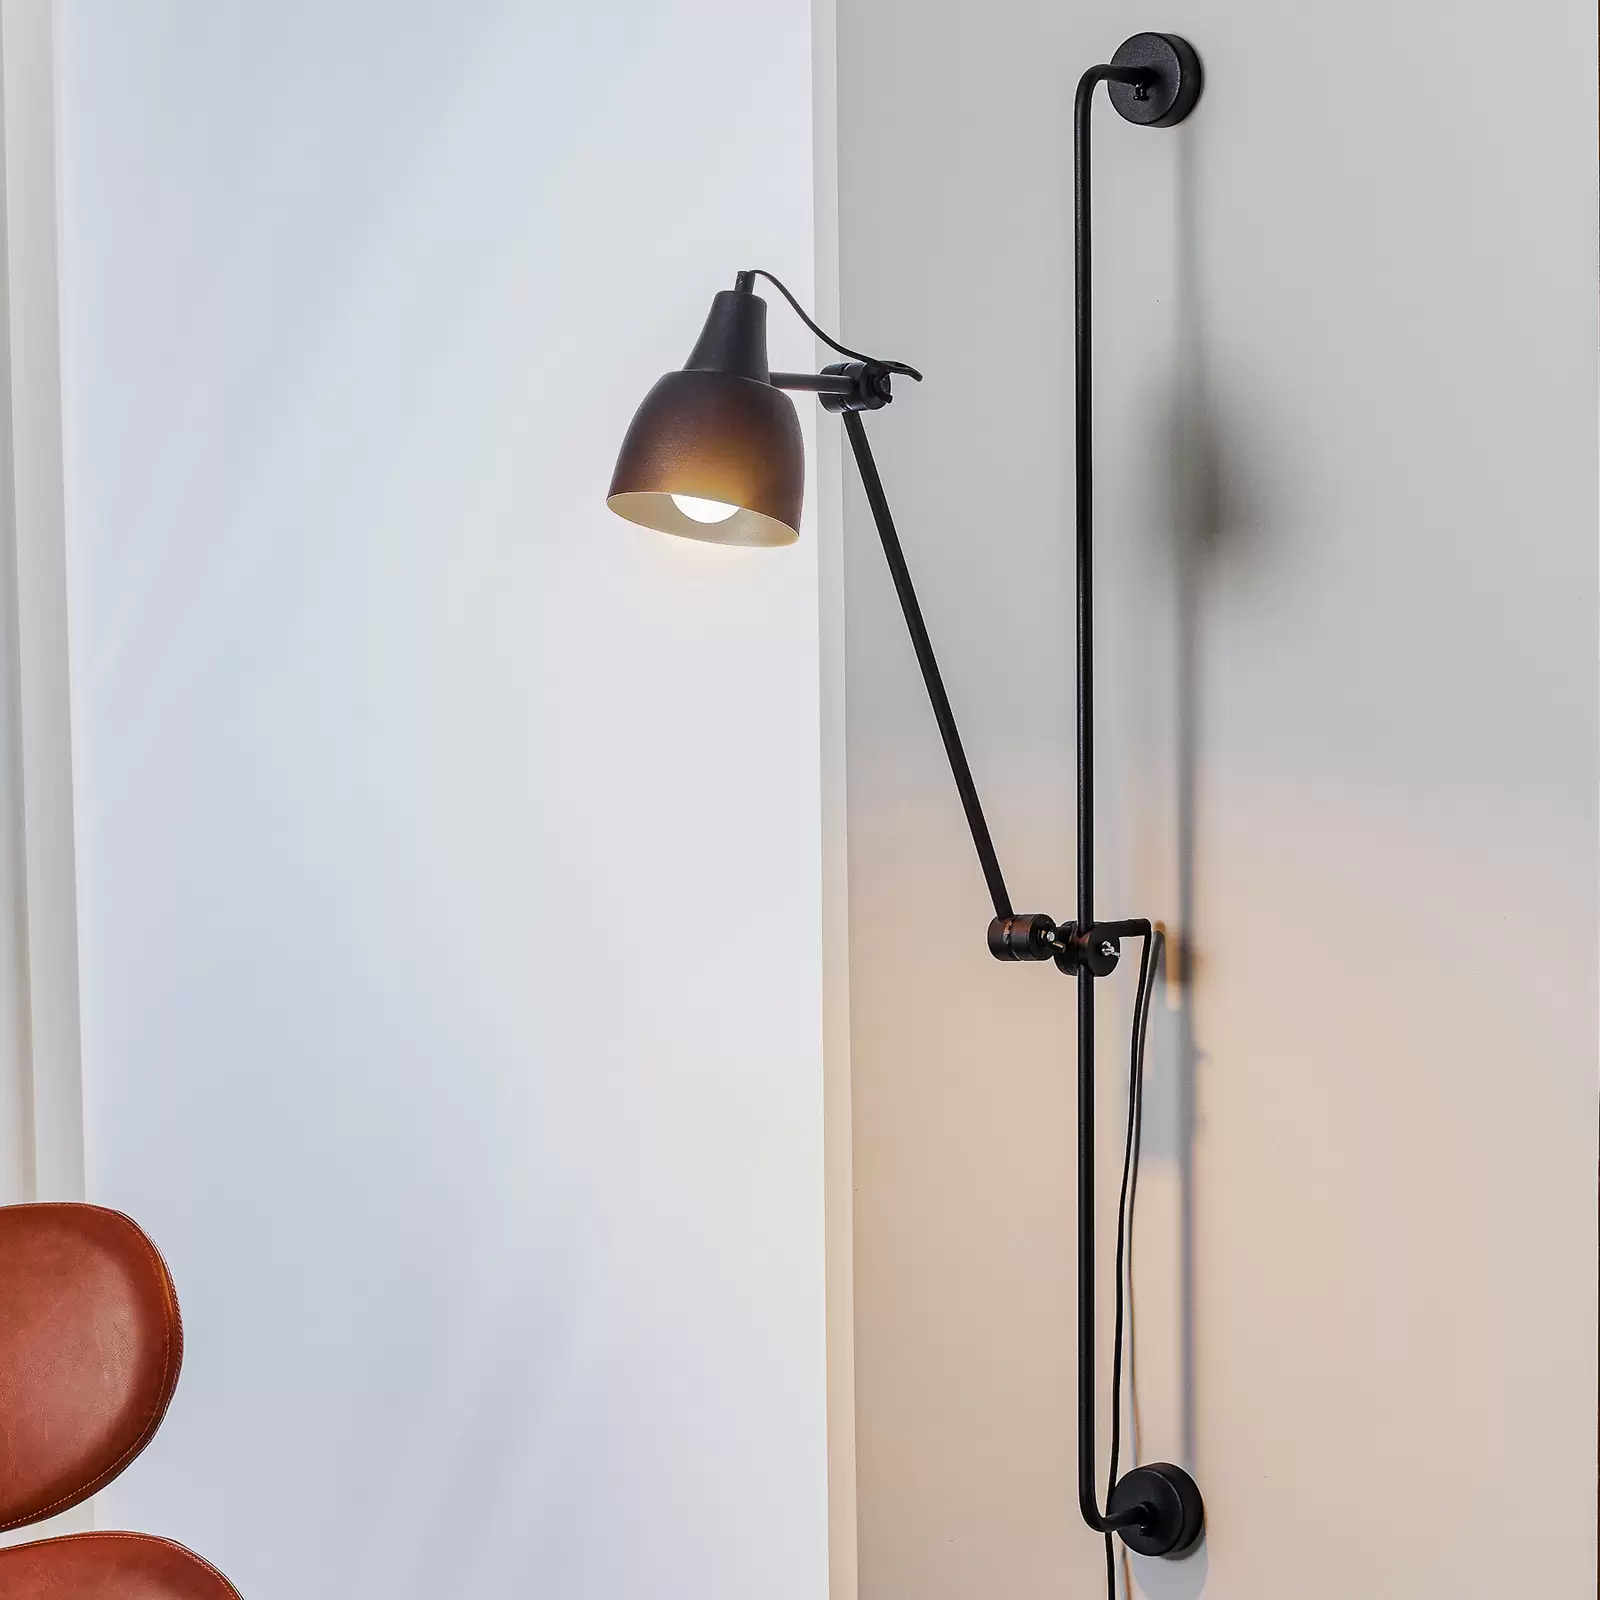 Dww-applique Murale Led Avec Dtecteur De Mouvement Intrieur, Lampe